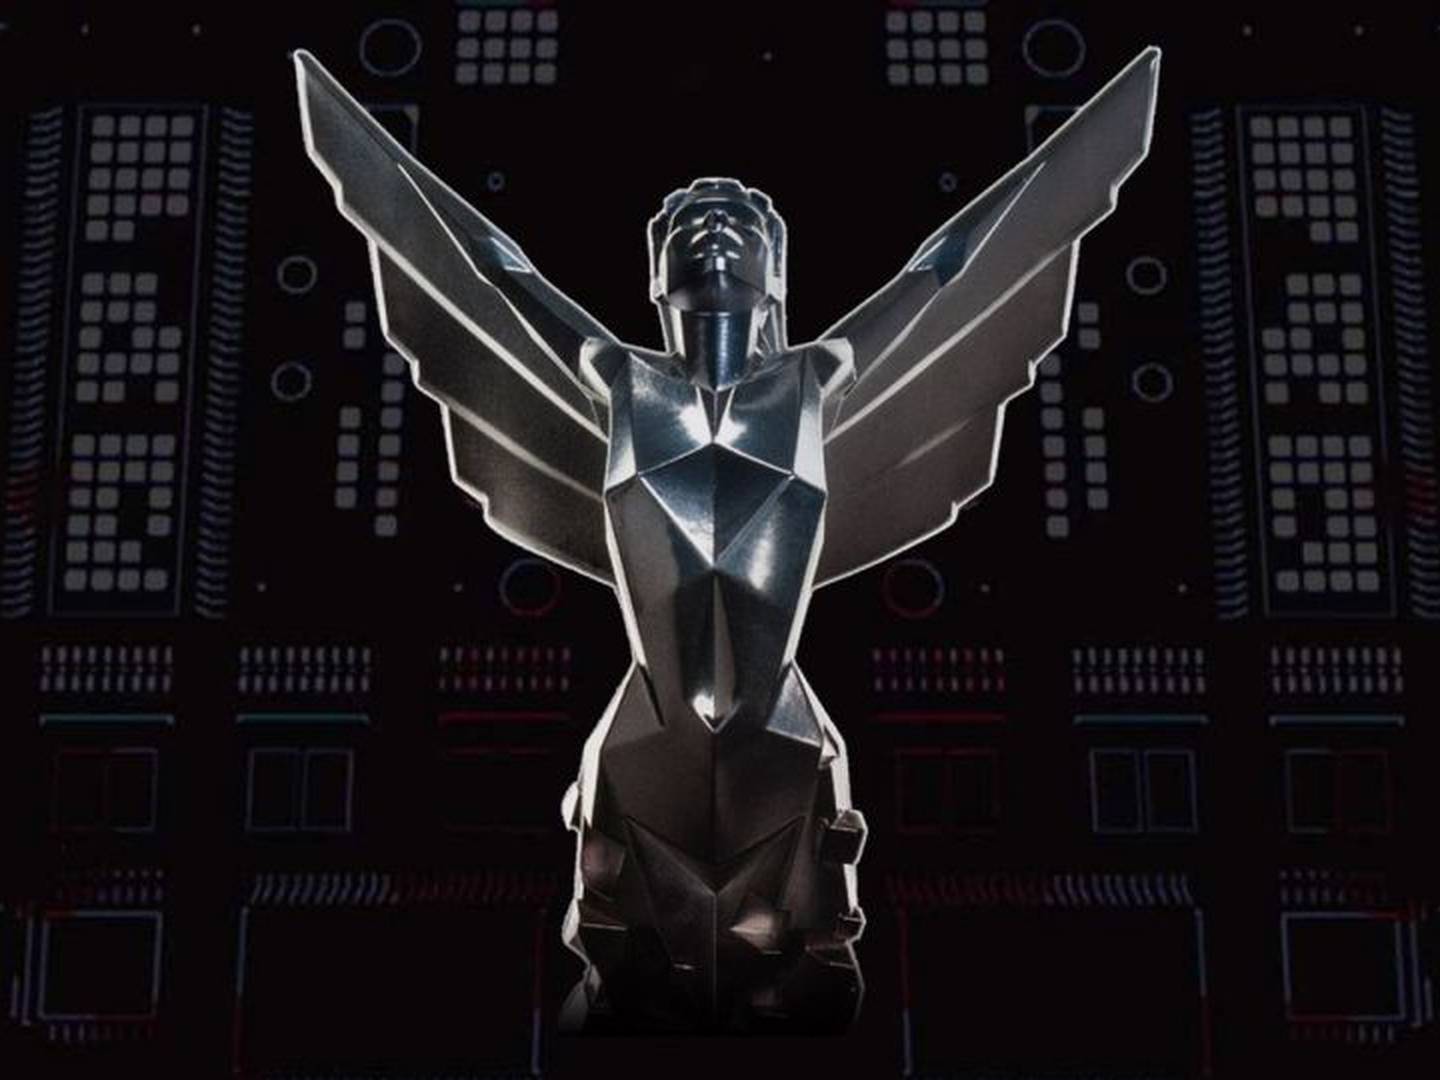 Avalie os prêmios de troféus de jogos futuristas cibernéticos